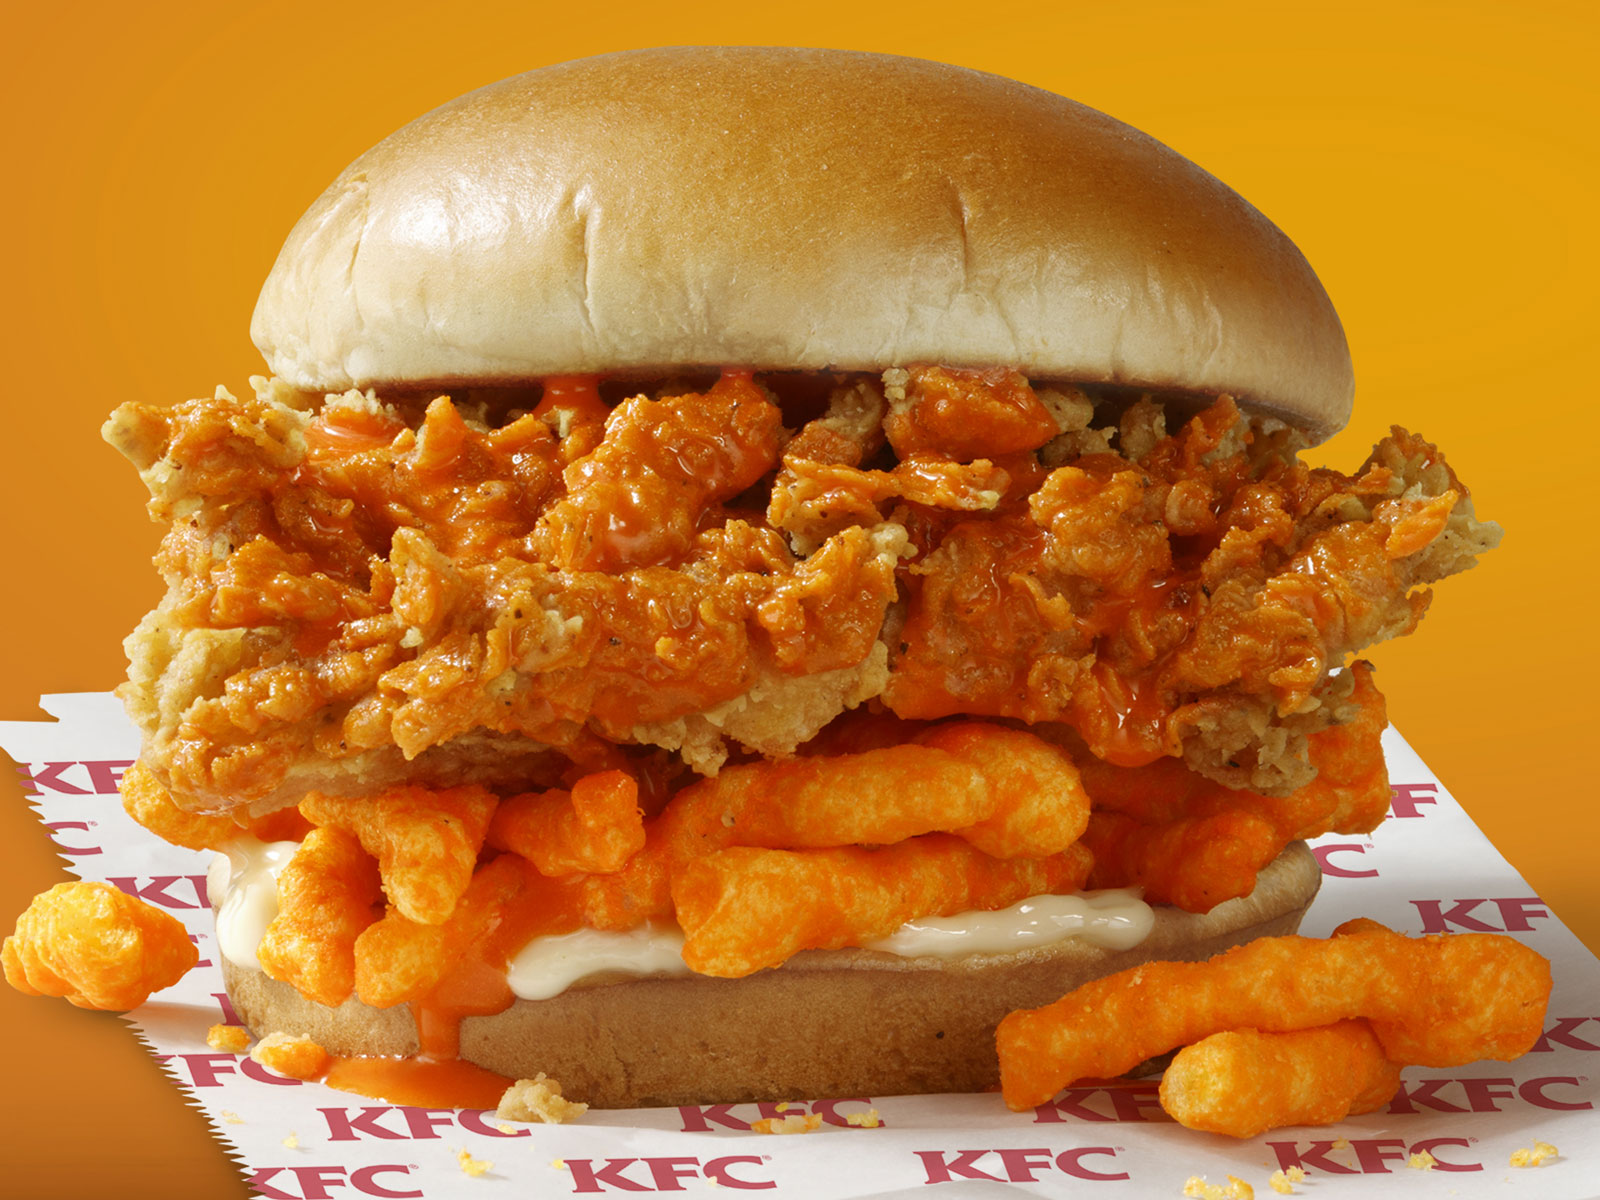 Kfc Tests Cheetos Chicken Sandwich - Kfc Cheetos Chicken Sandwich , HD Wallpaper & Backgrounds